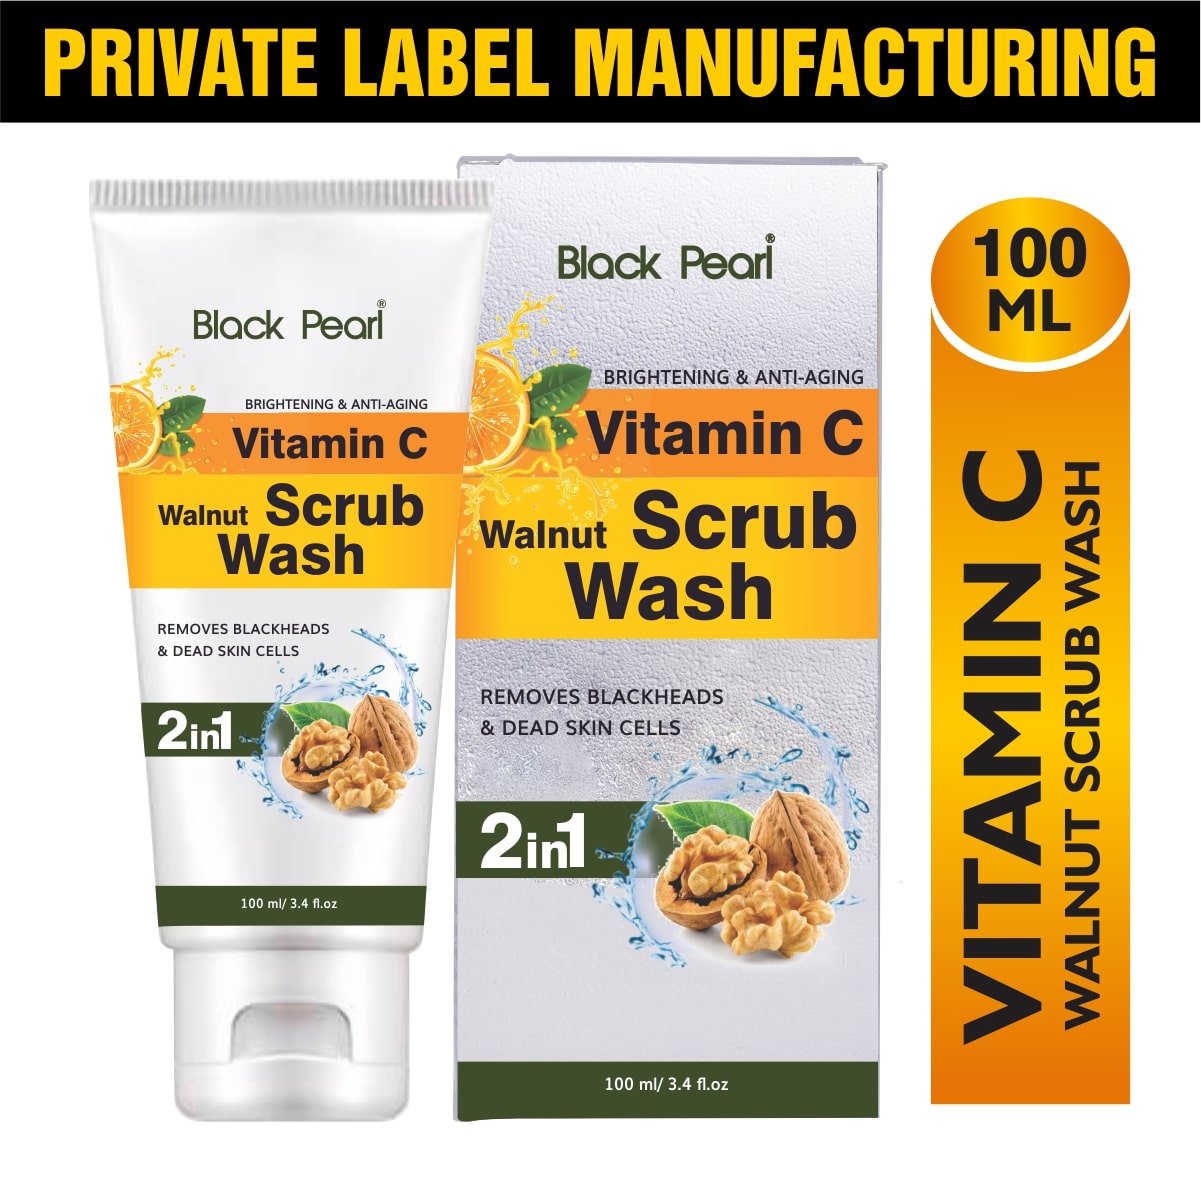 Vitamin C Walnut Scrub Wash Private Label Manufacturing